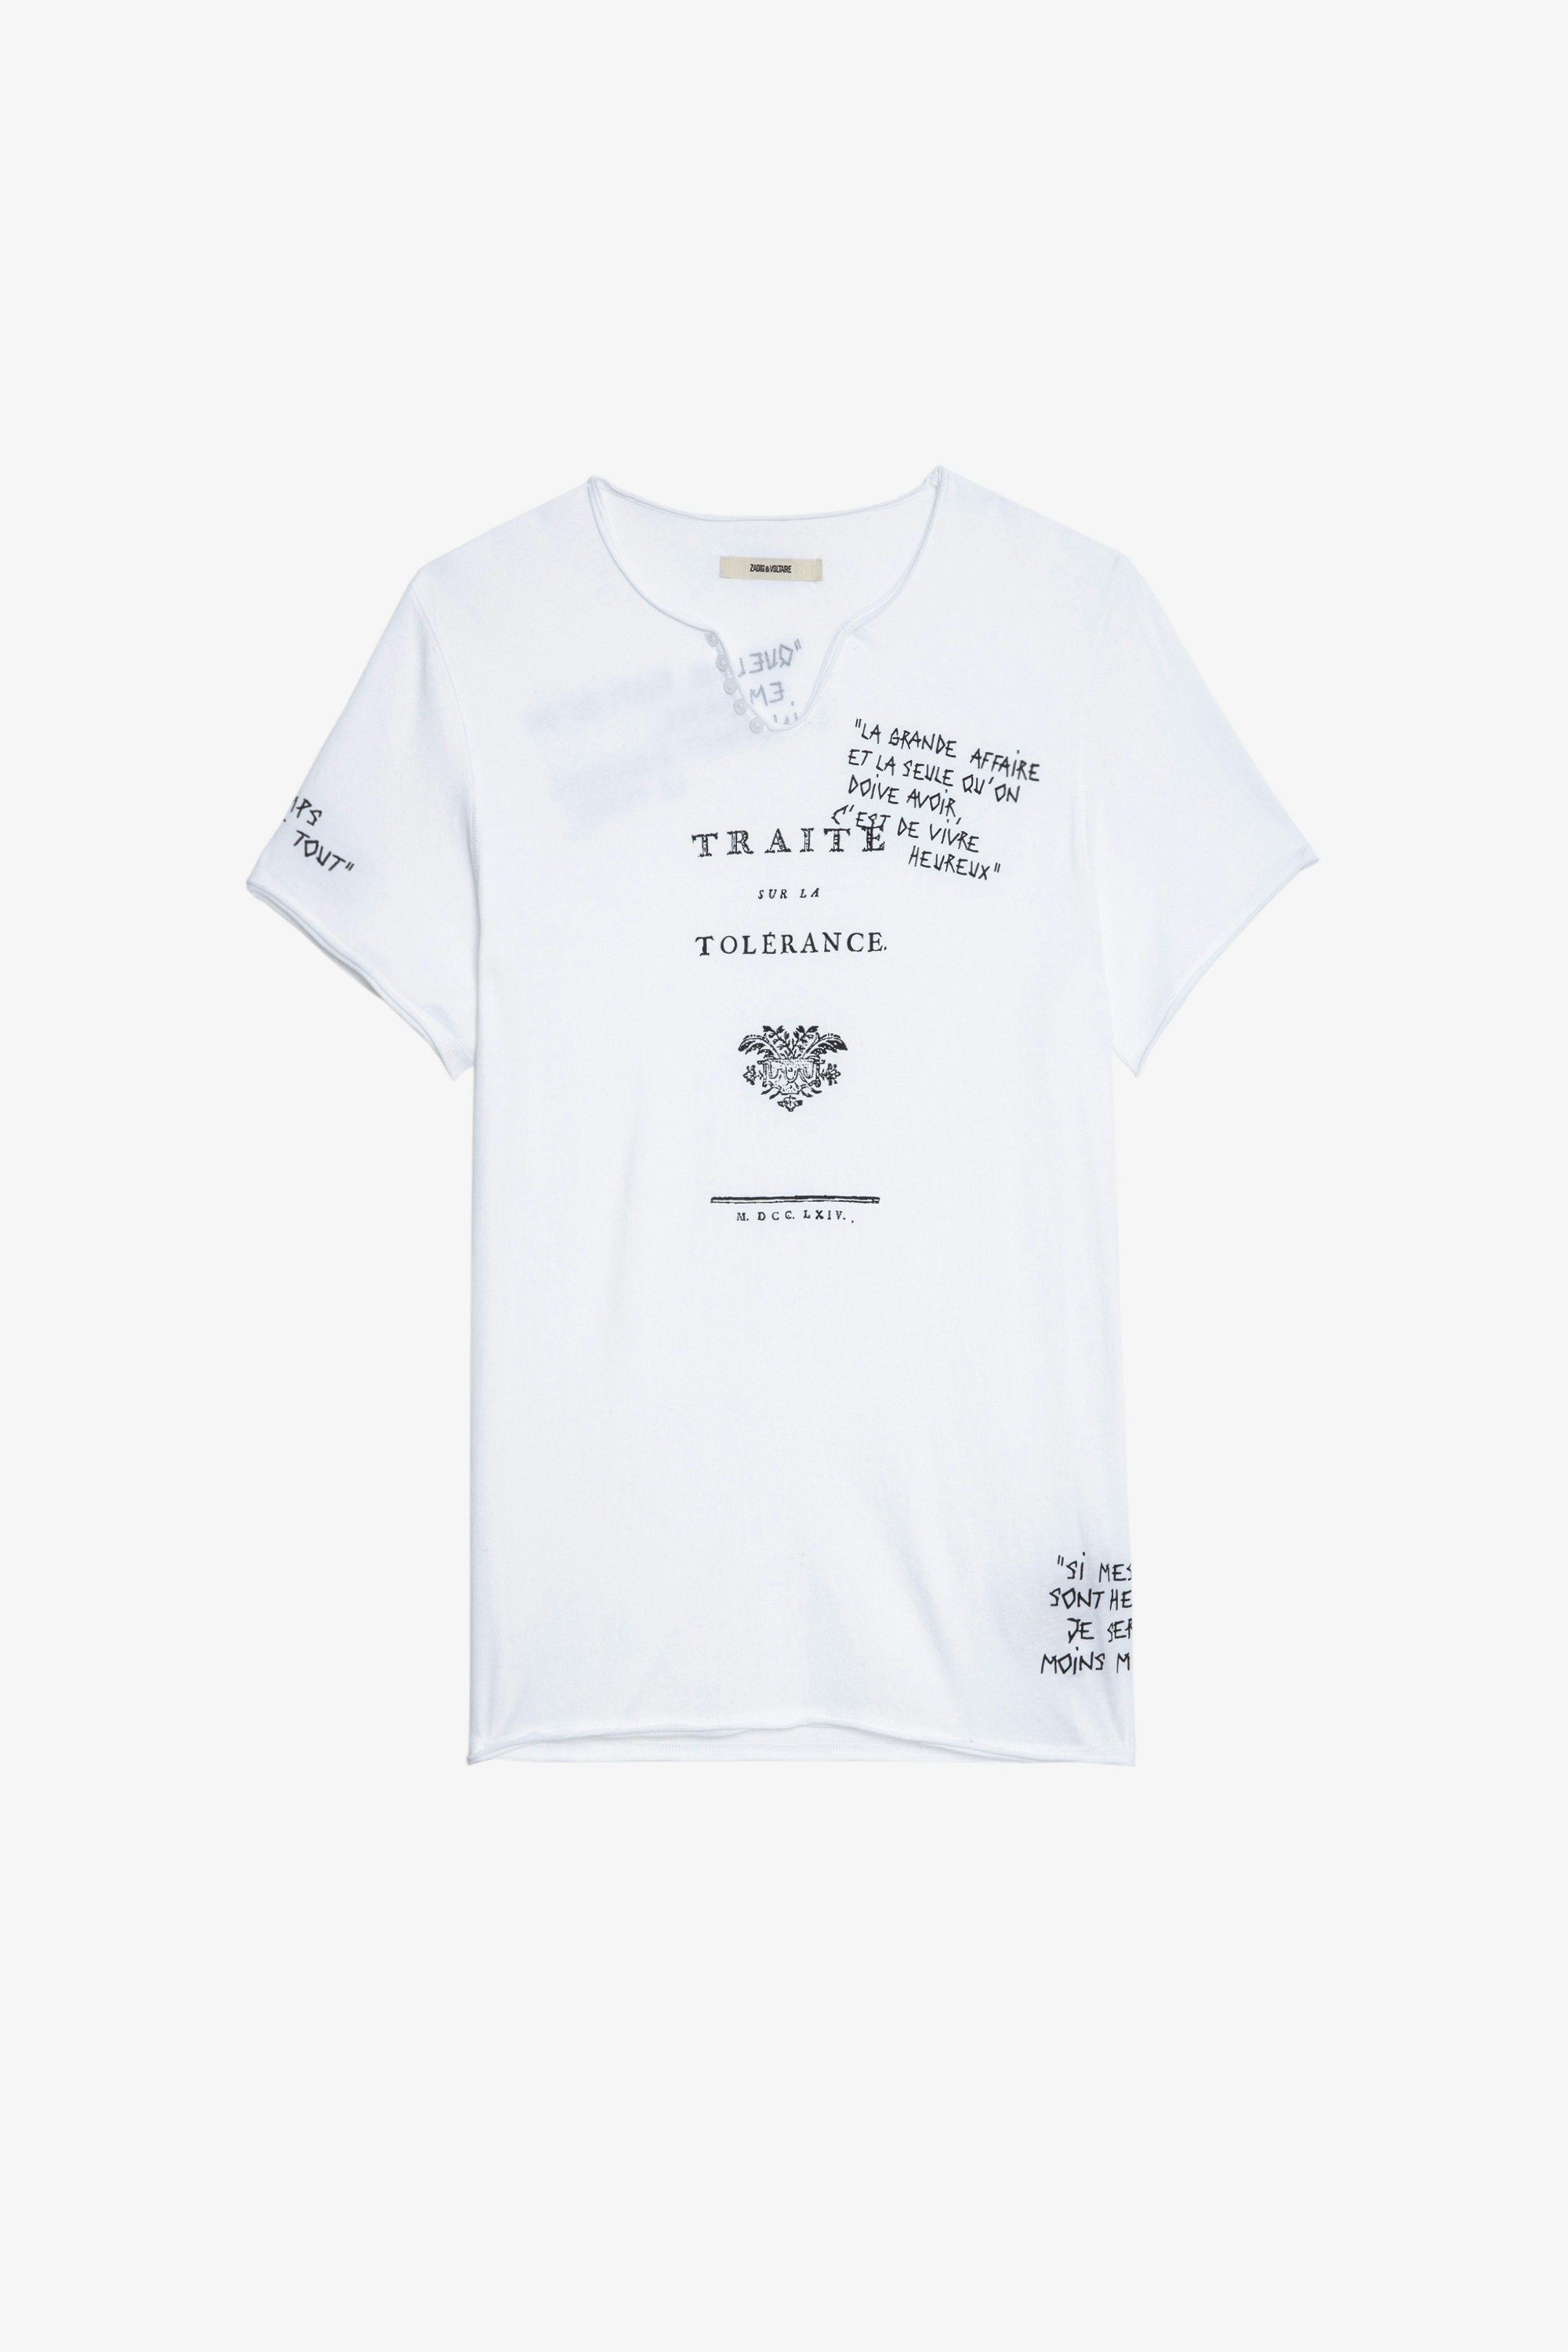 T-Shirt Monastir Kurzärmeliges Herren-T-Shirt mit Henley-Ausschnitt aus weißer Baumwolle mit Zitaten aus dem Werk Traité de la Tolérance